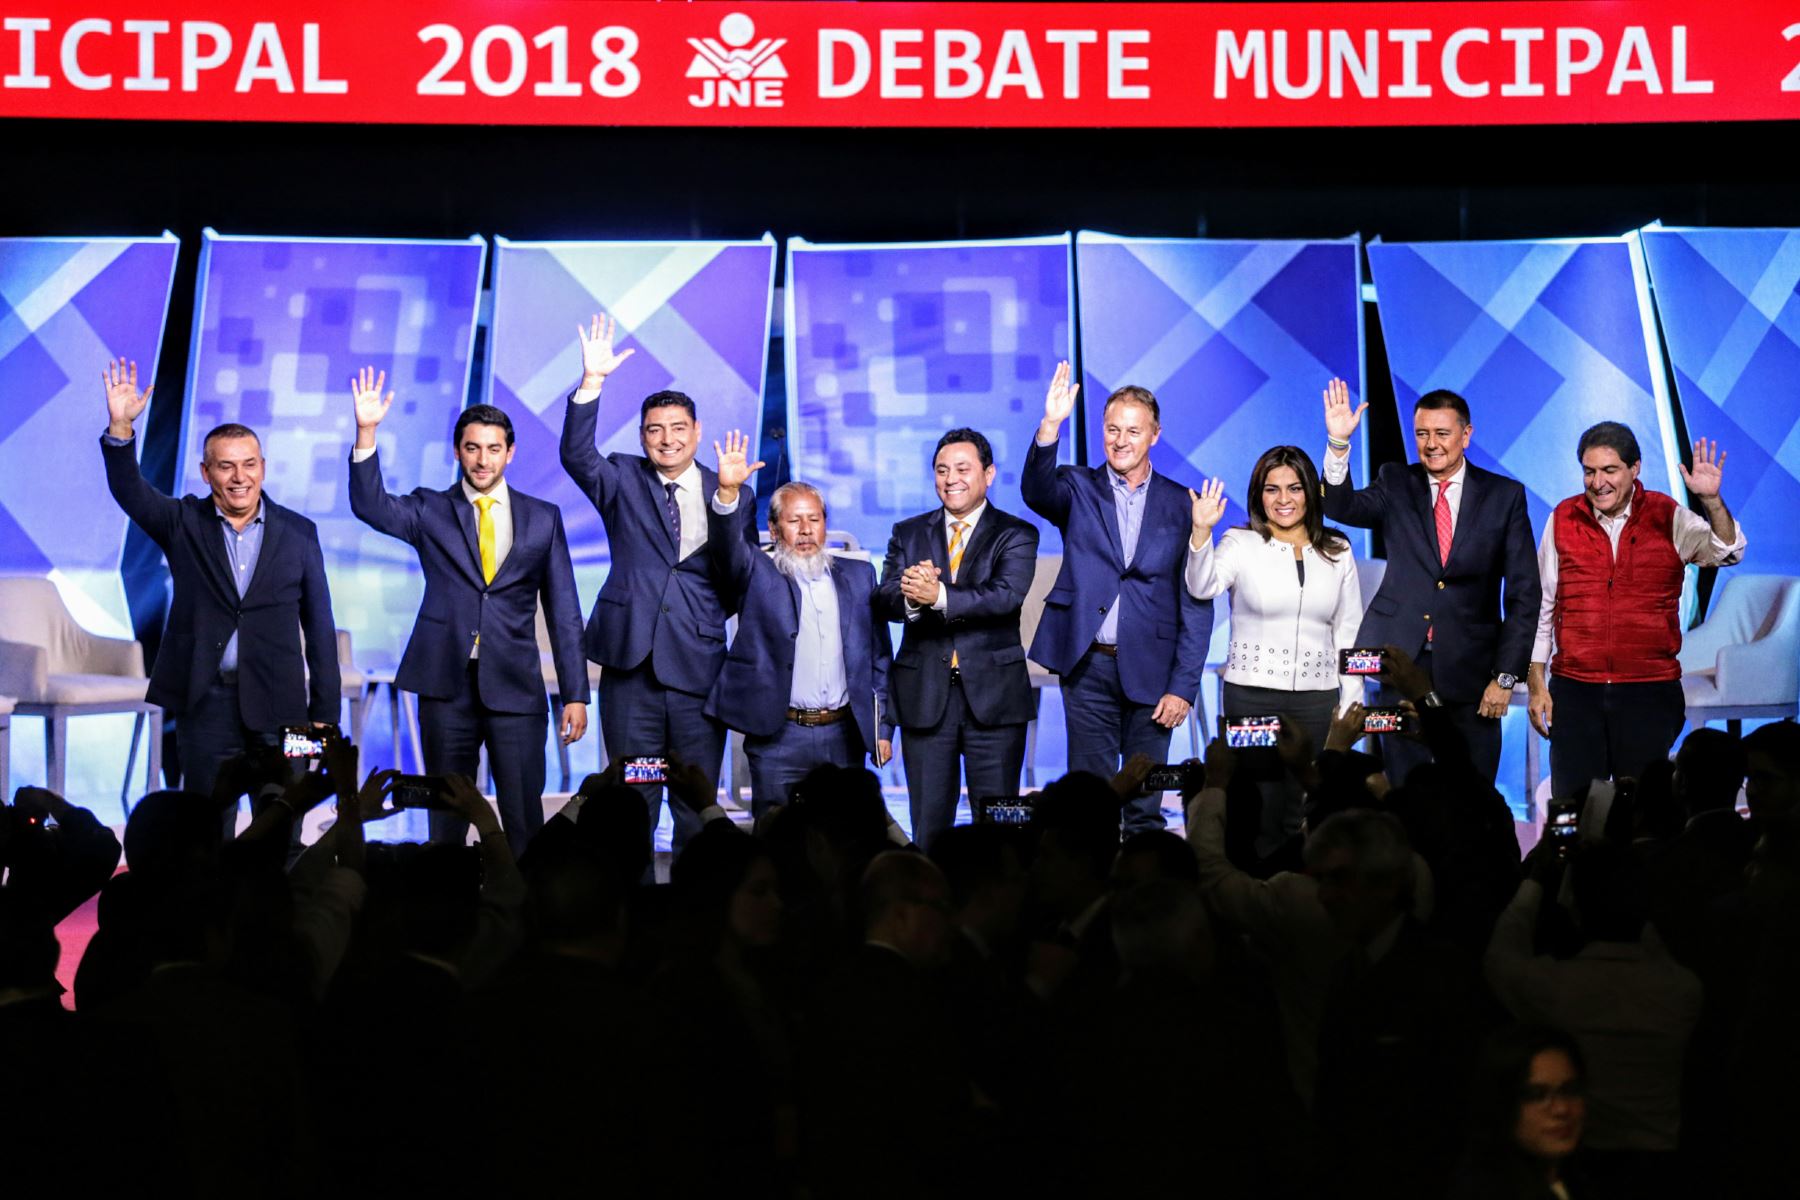 Debate Municipal 2018 y sus participantes